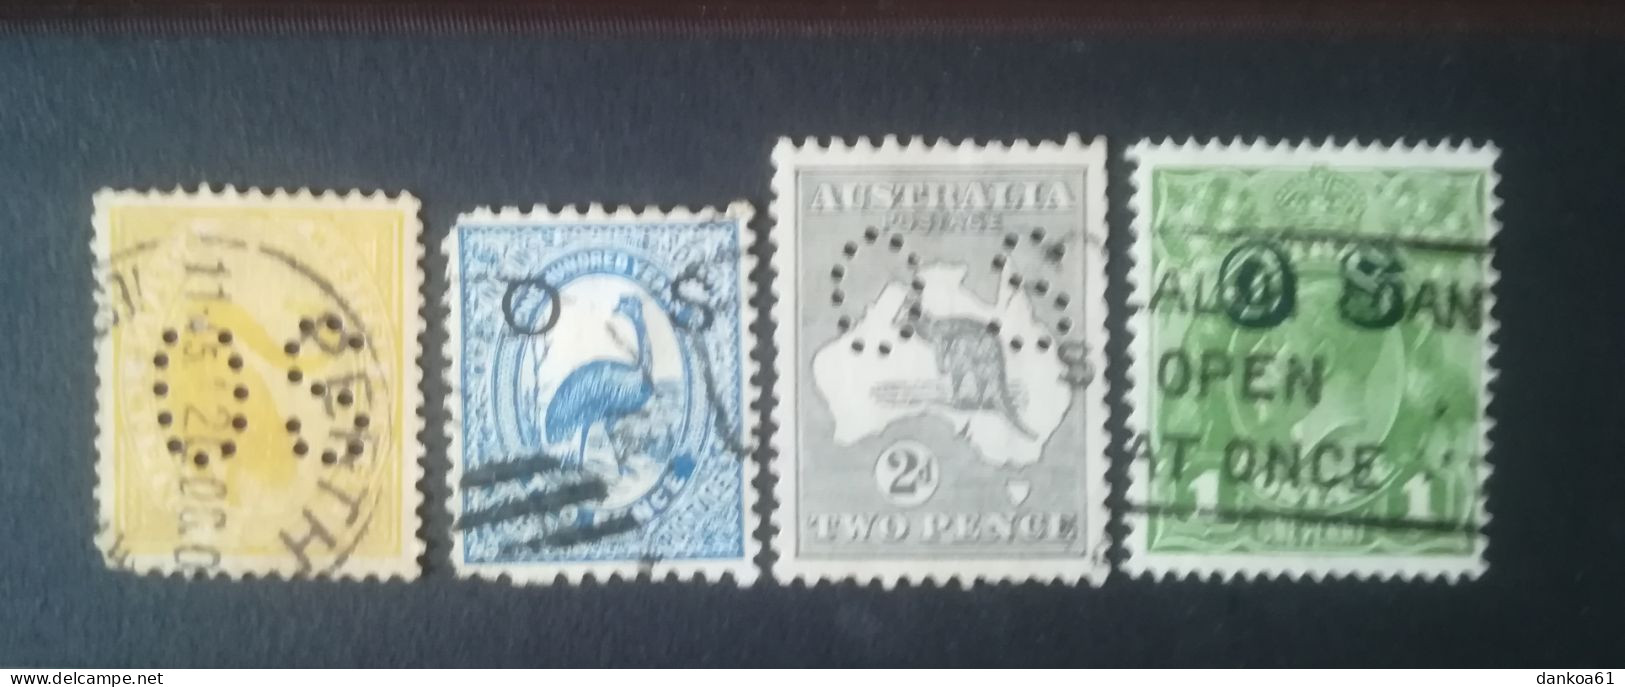 Australien Dienstpost - Dienstmarken